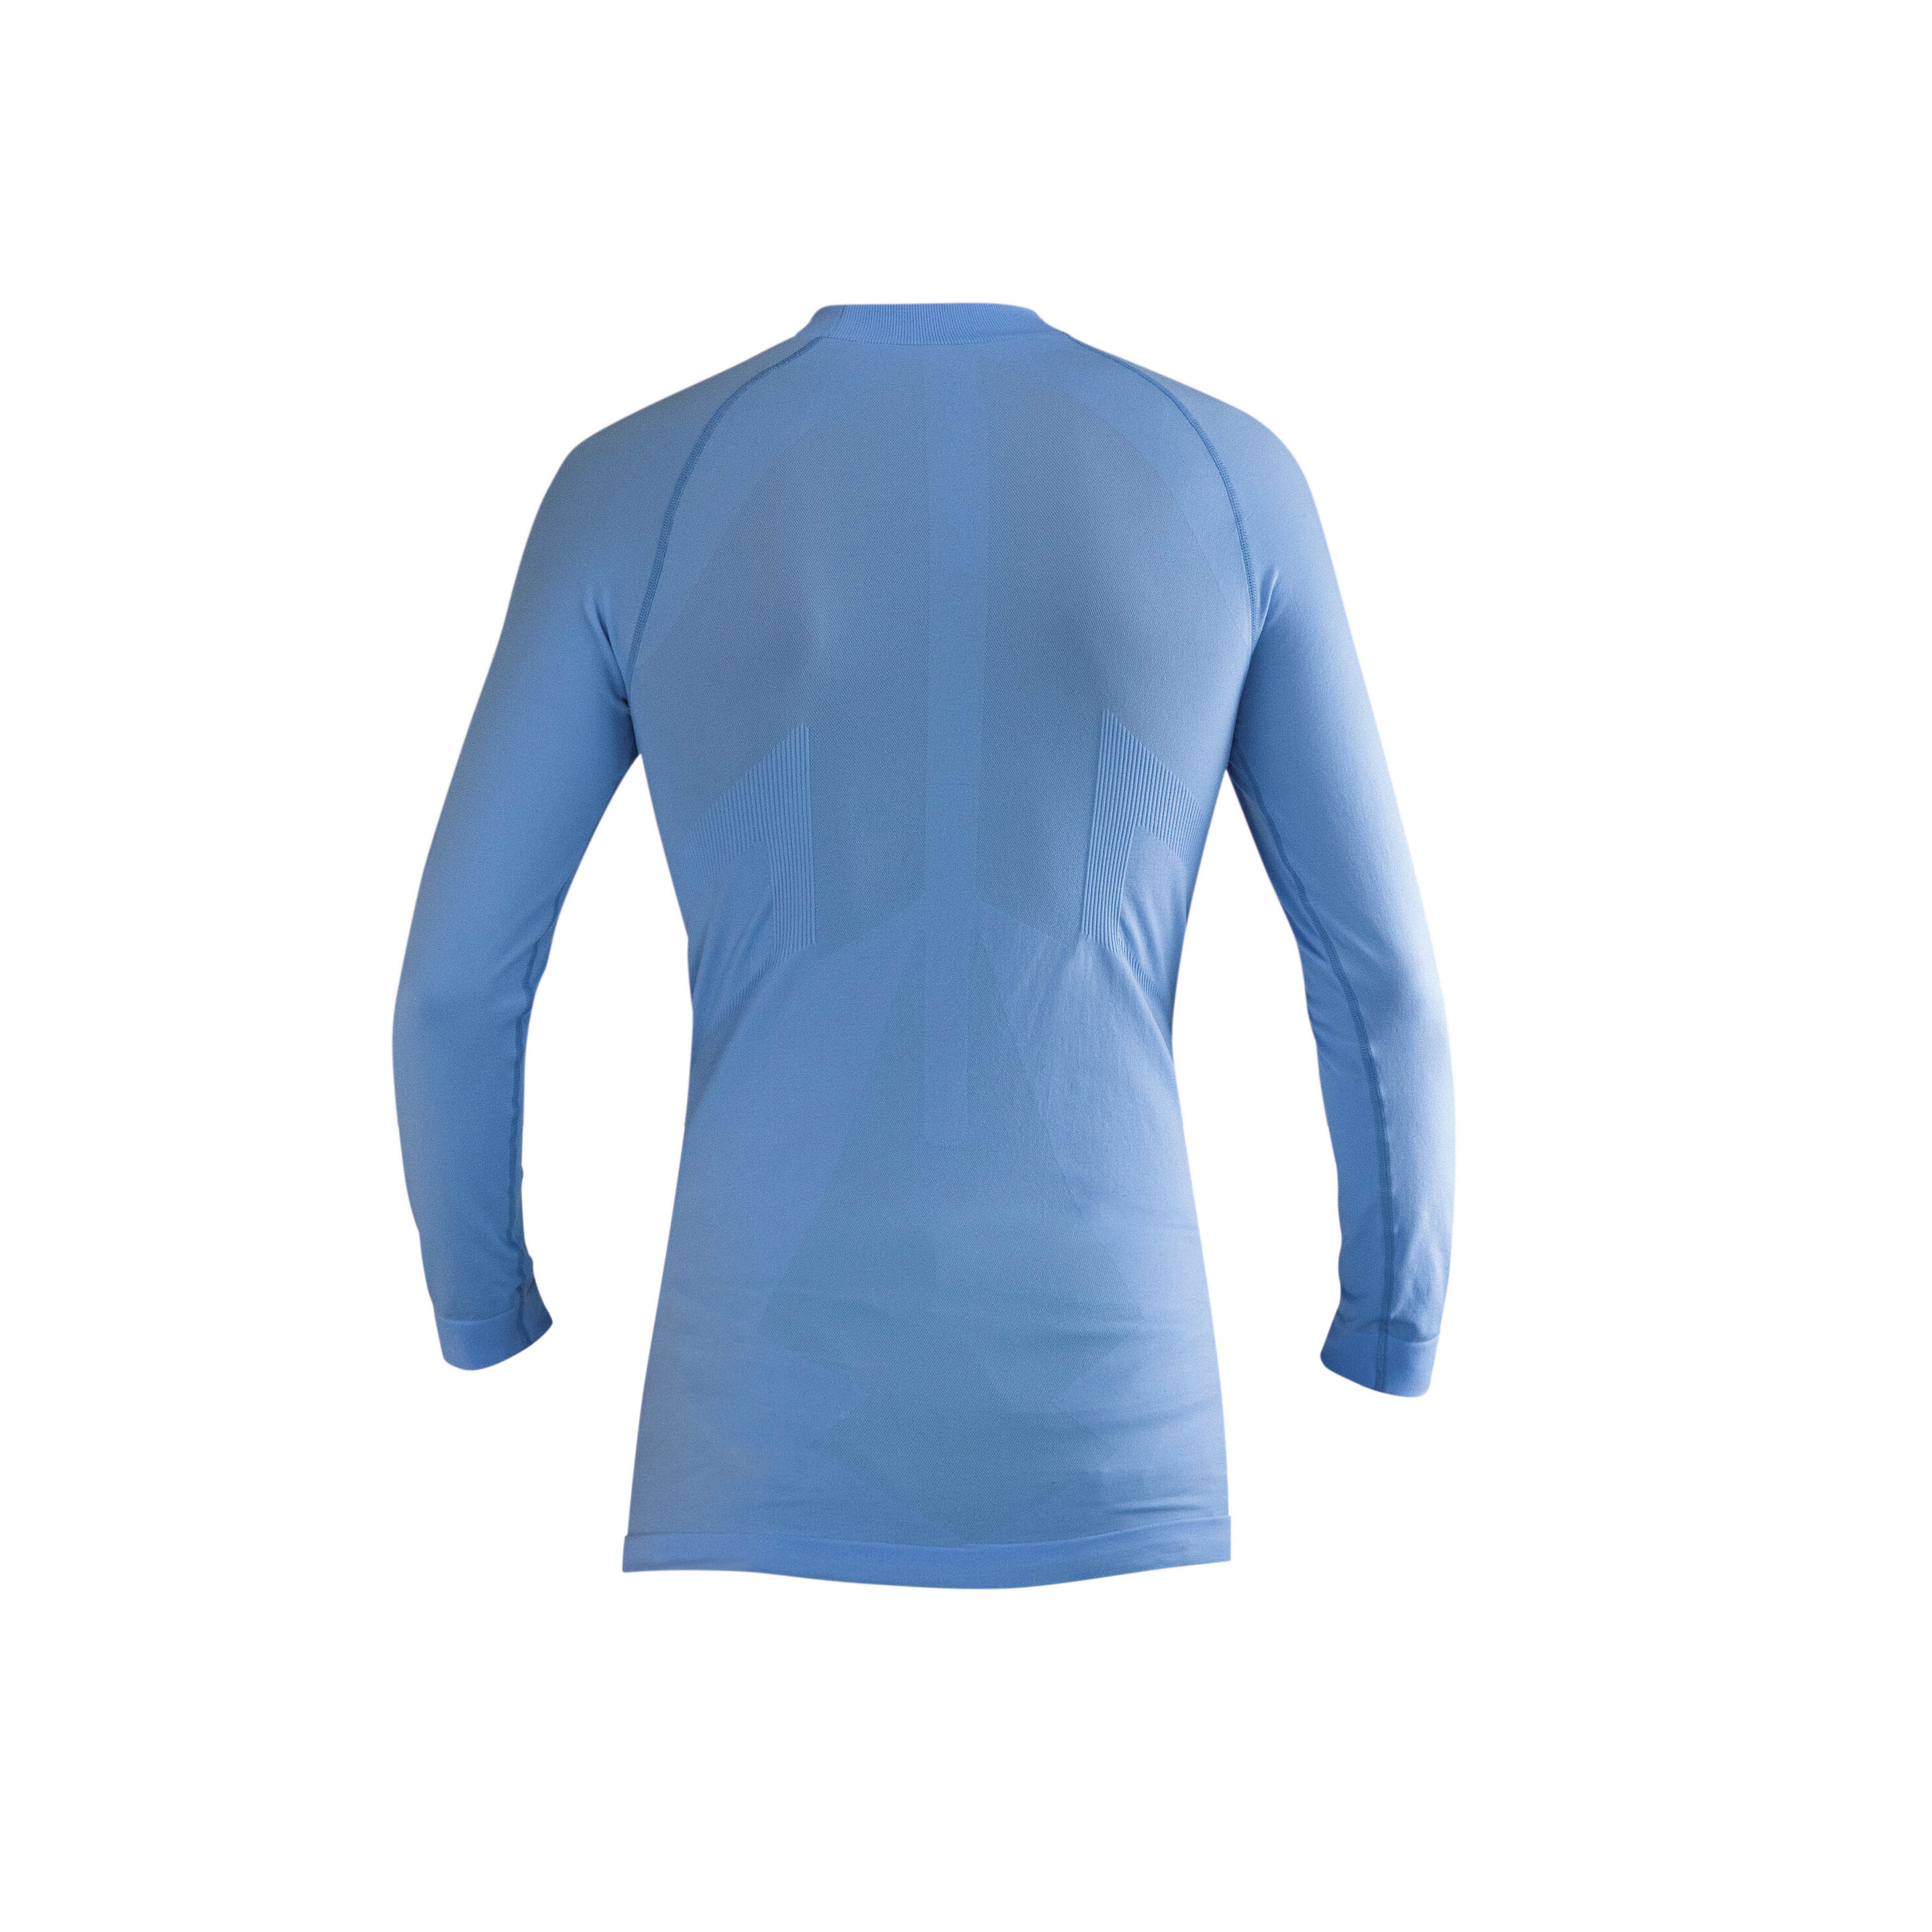 Camiseta Acerbis Interior Intimo - Azul - Camiseta Acerbis Interior Intimo  MKP